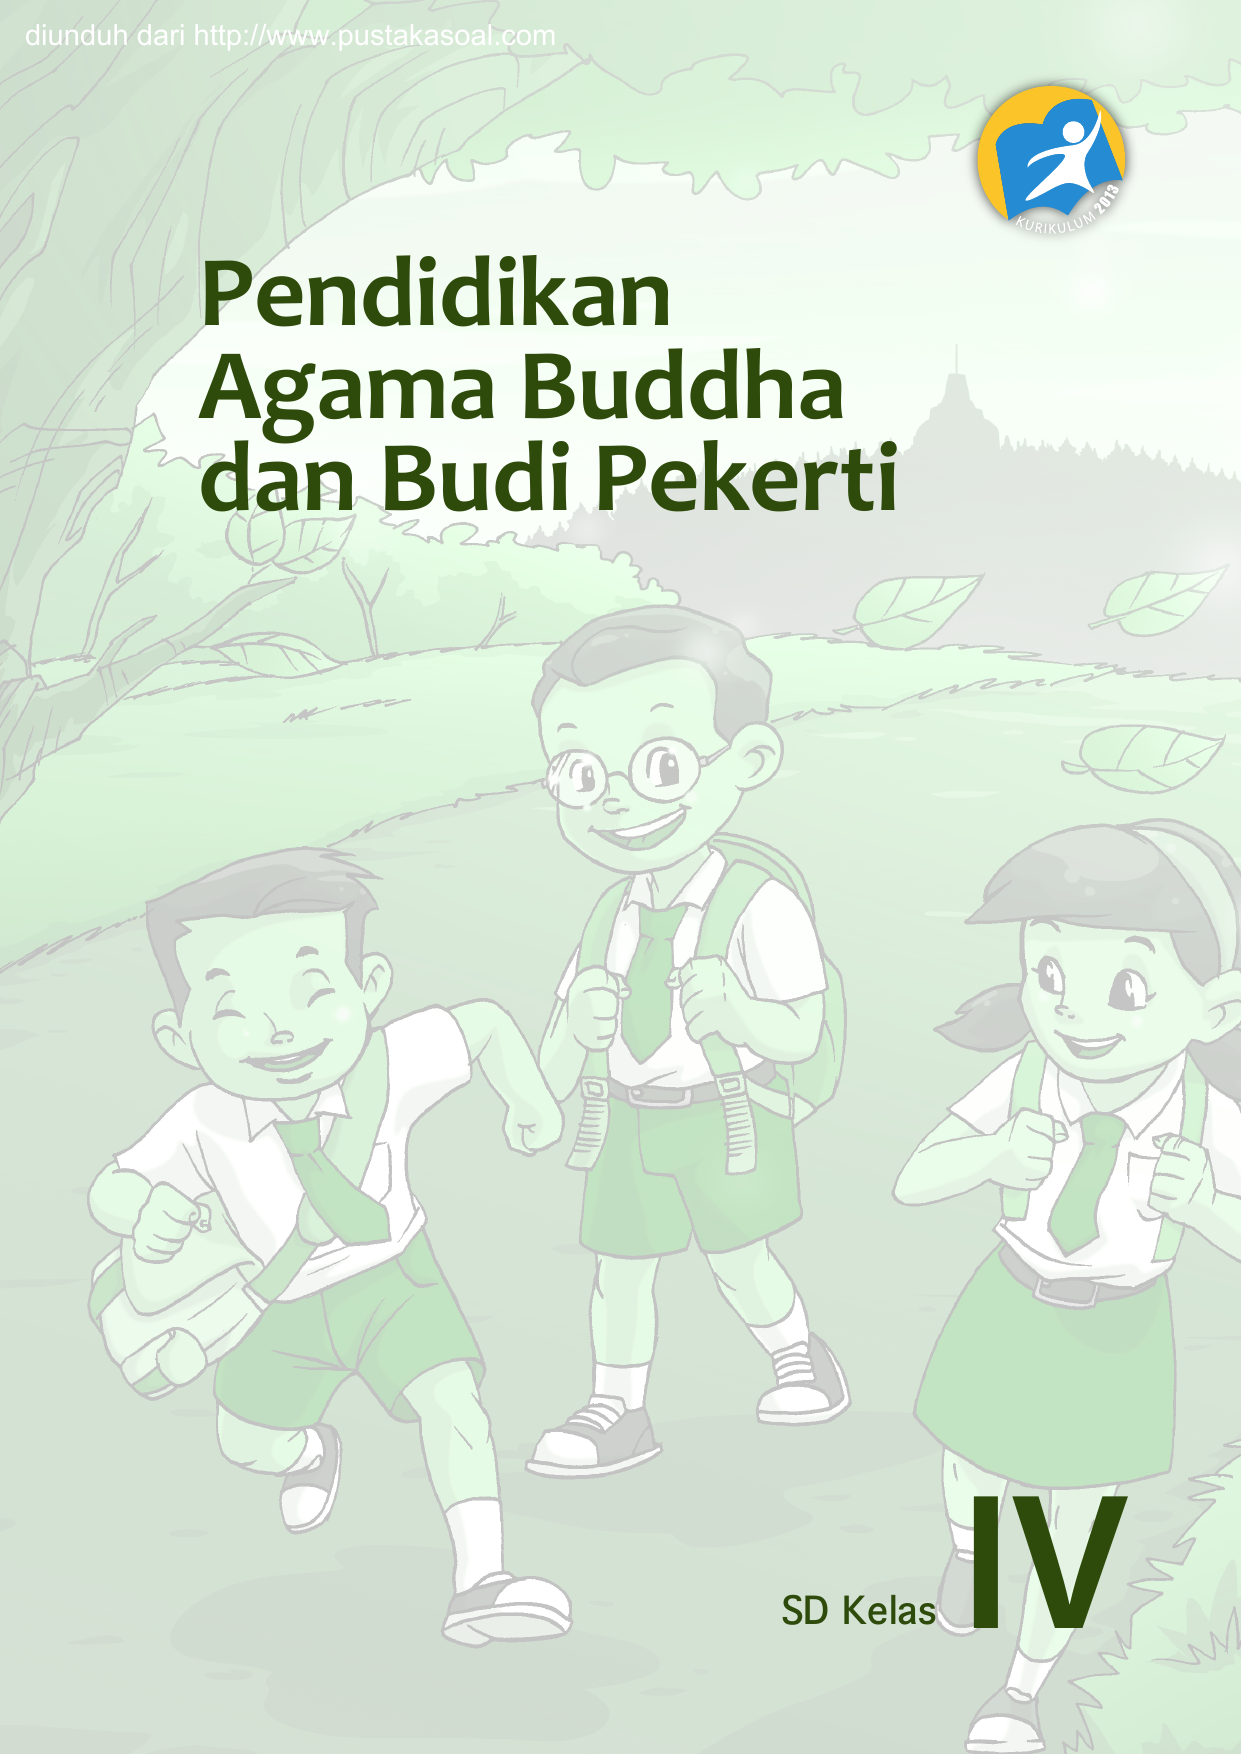 diunduh dari Pendidikan Agama Buddha dan Budi Pekerti SD Kelas IV Hak Cipta © 2013 pada Kementerian Pendidikan dan Kebudayaan